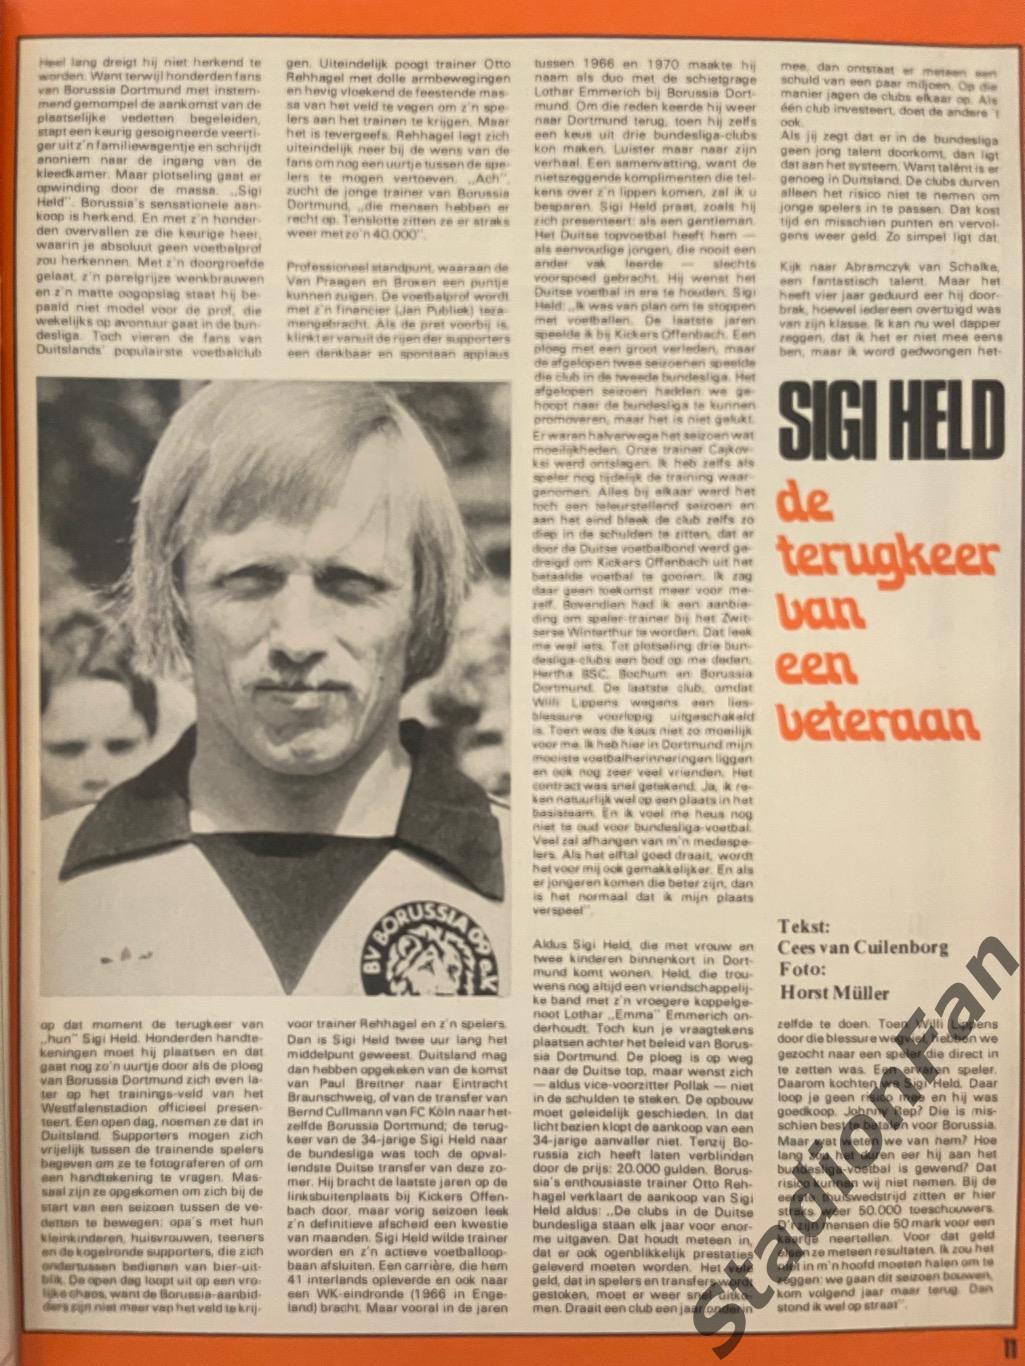 Журнал Voetbal nr.32 - 1977 год. 5